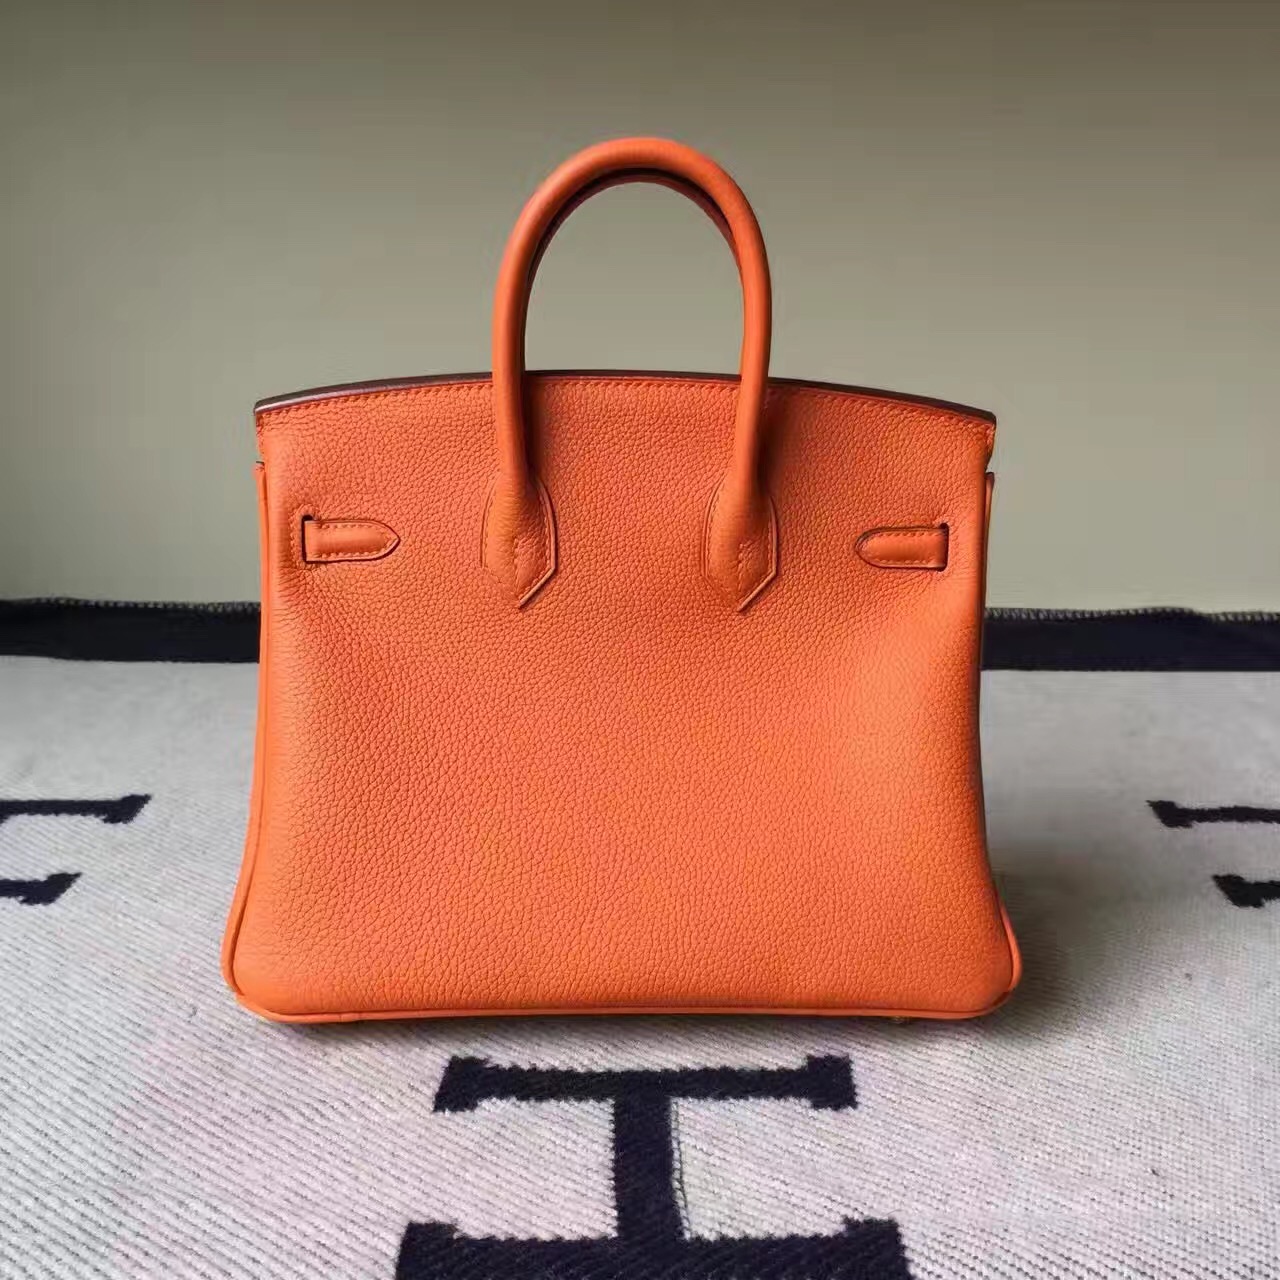 Hermes Website Togo Calfskin Leather Hermes Birkin25cm Bag in CK93 Orange